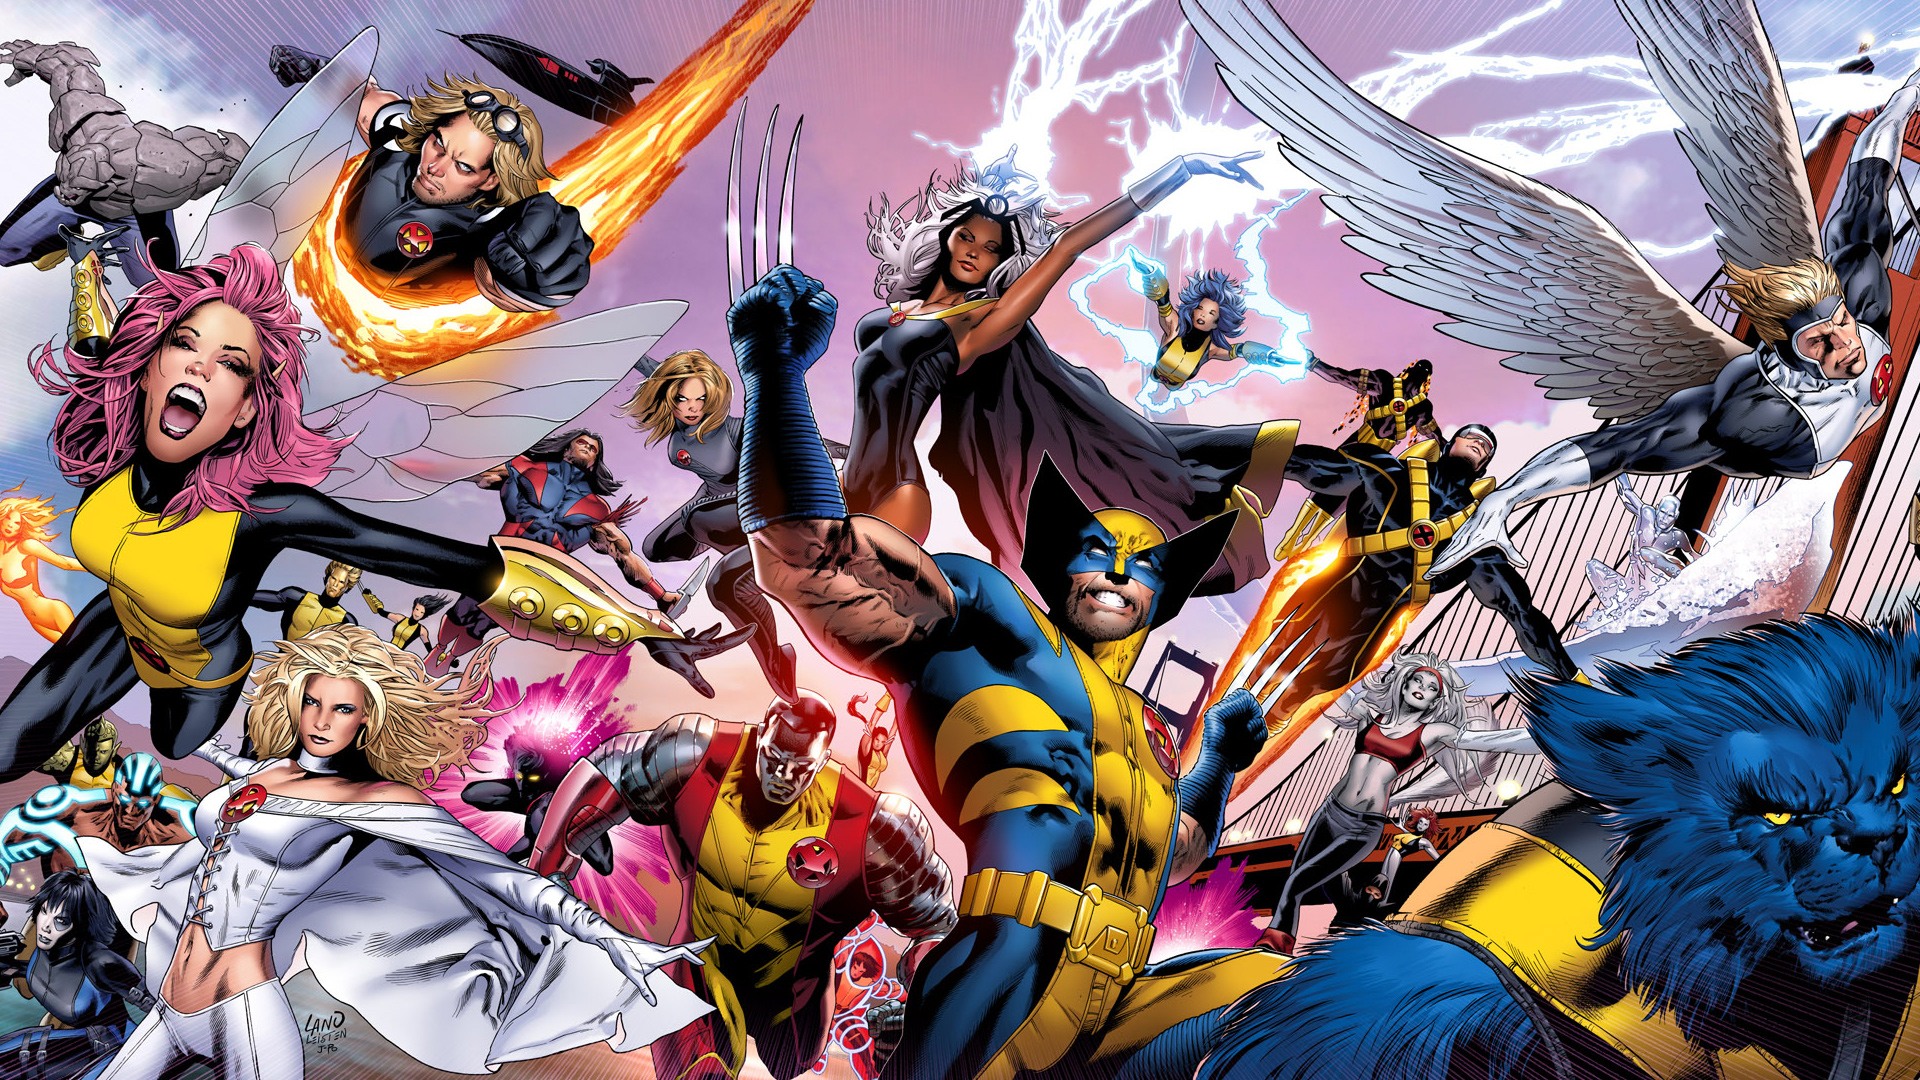 X-Men, Marvel Comics - desktop wallpaper